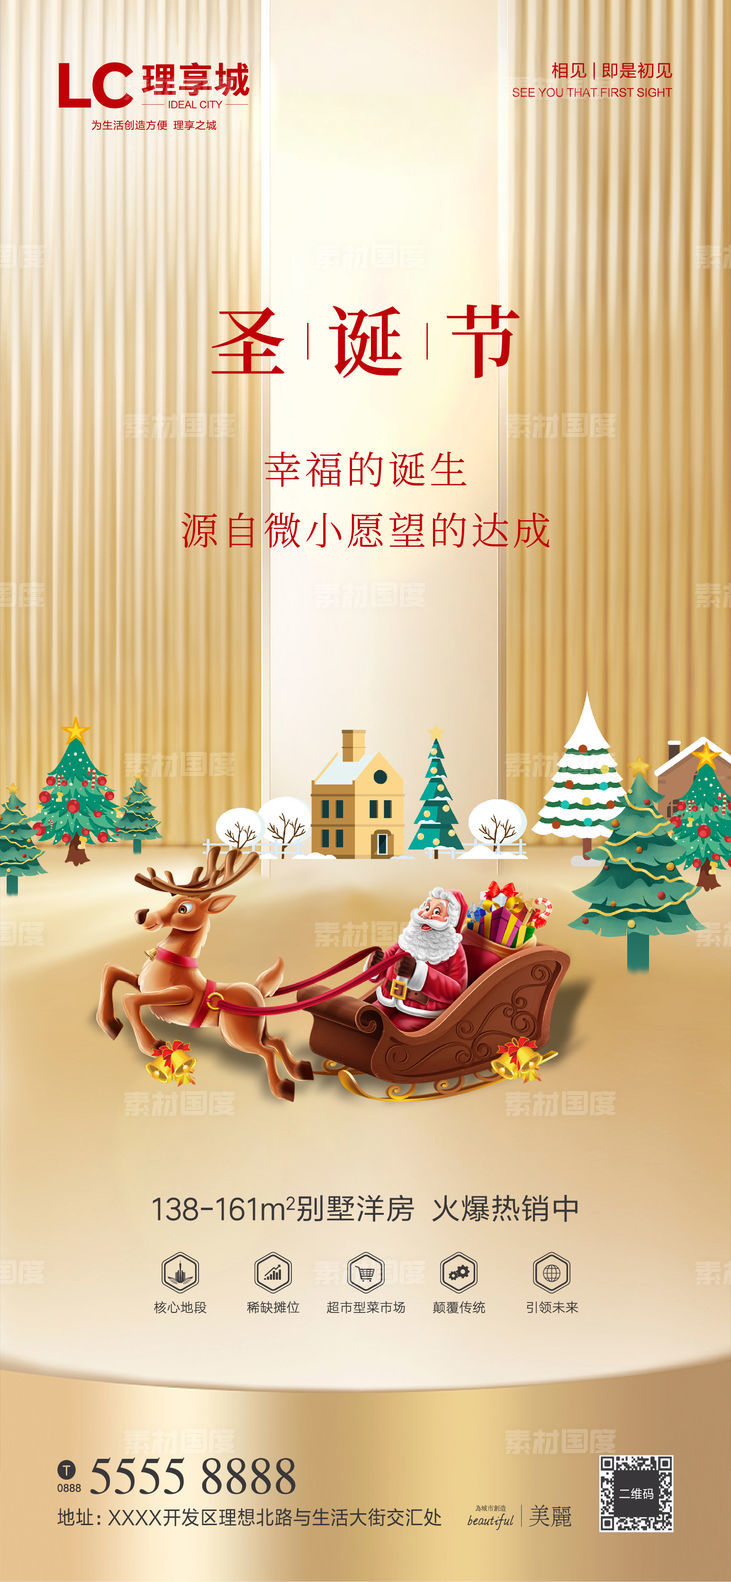 圣诞节 圣诞老人 圣诞树 礼物 平安夜 房地产 广告 海报